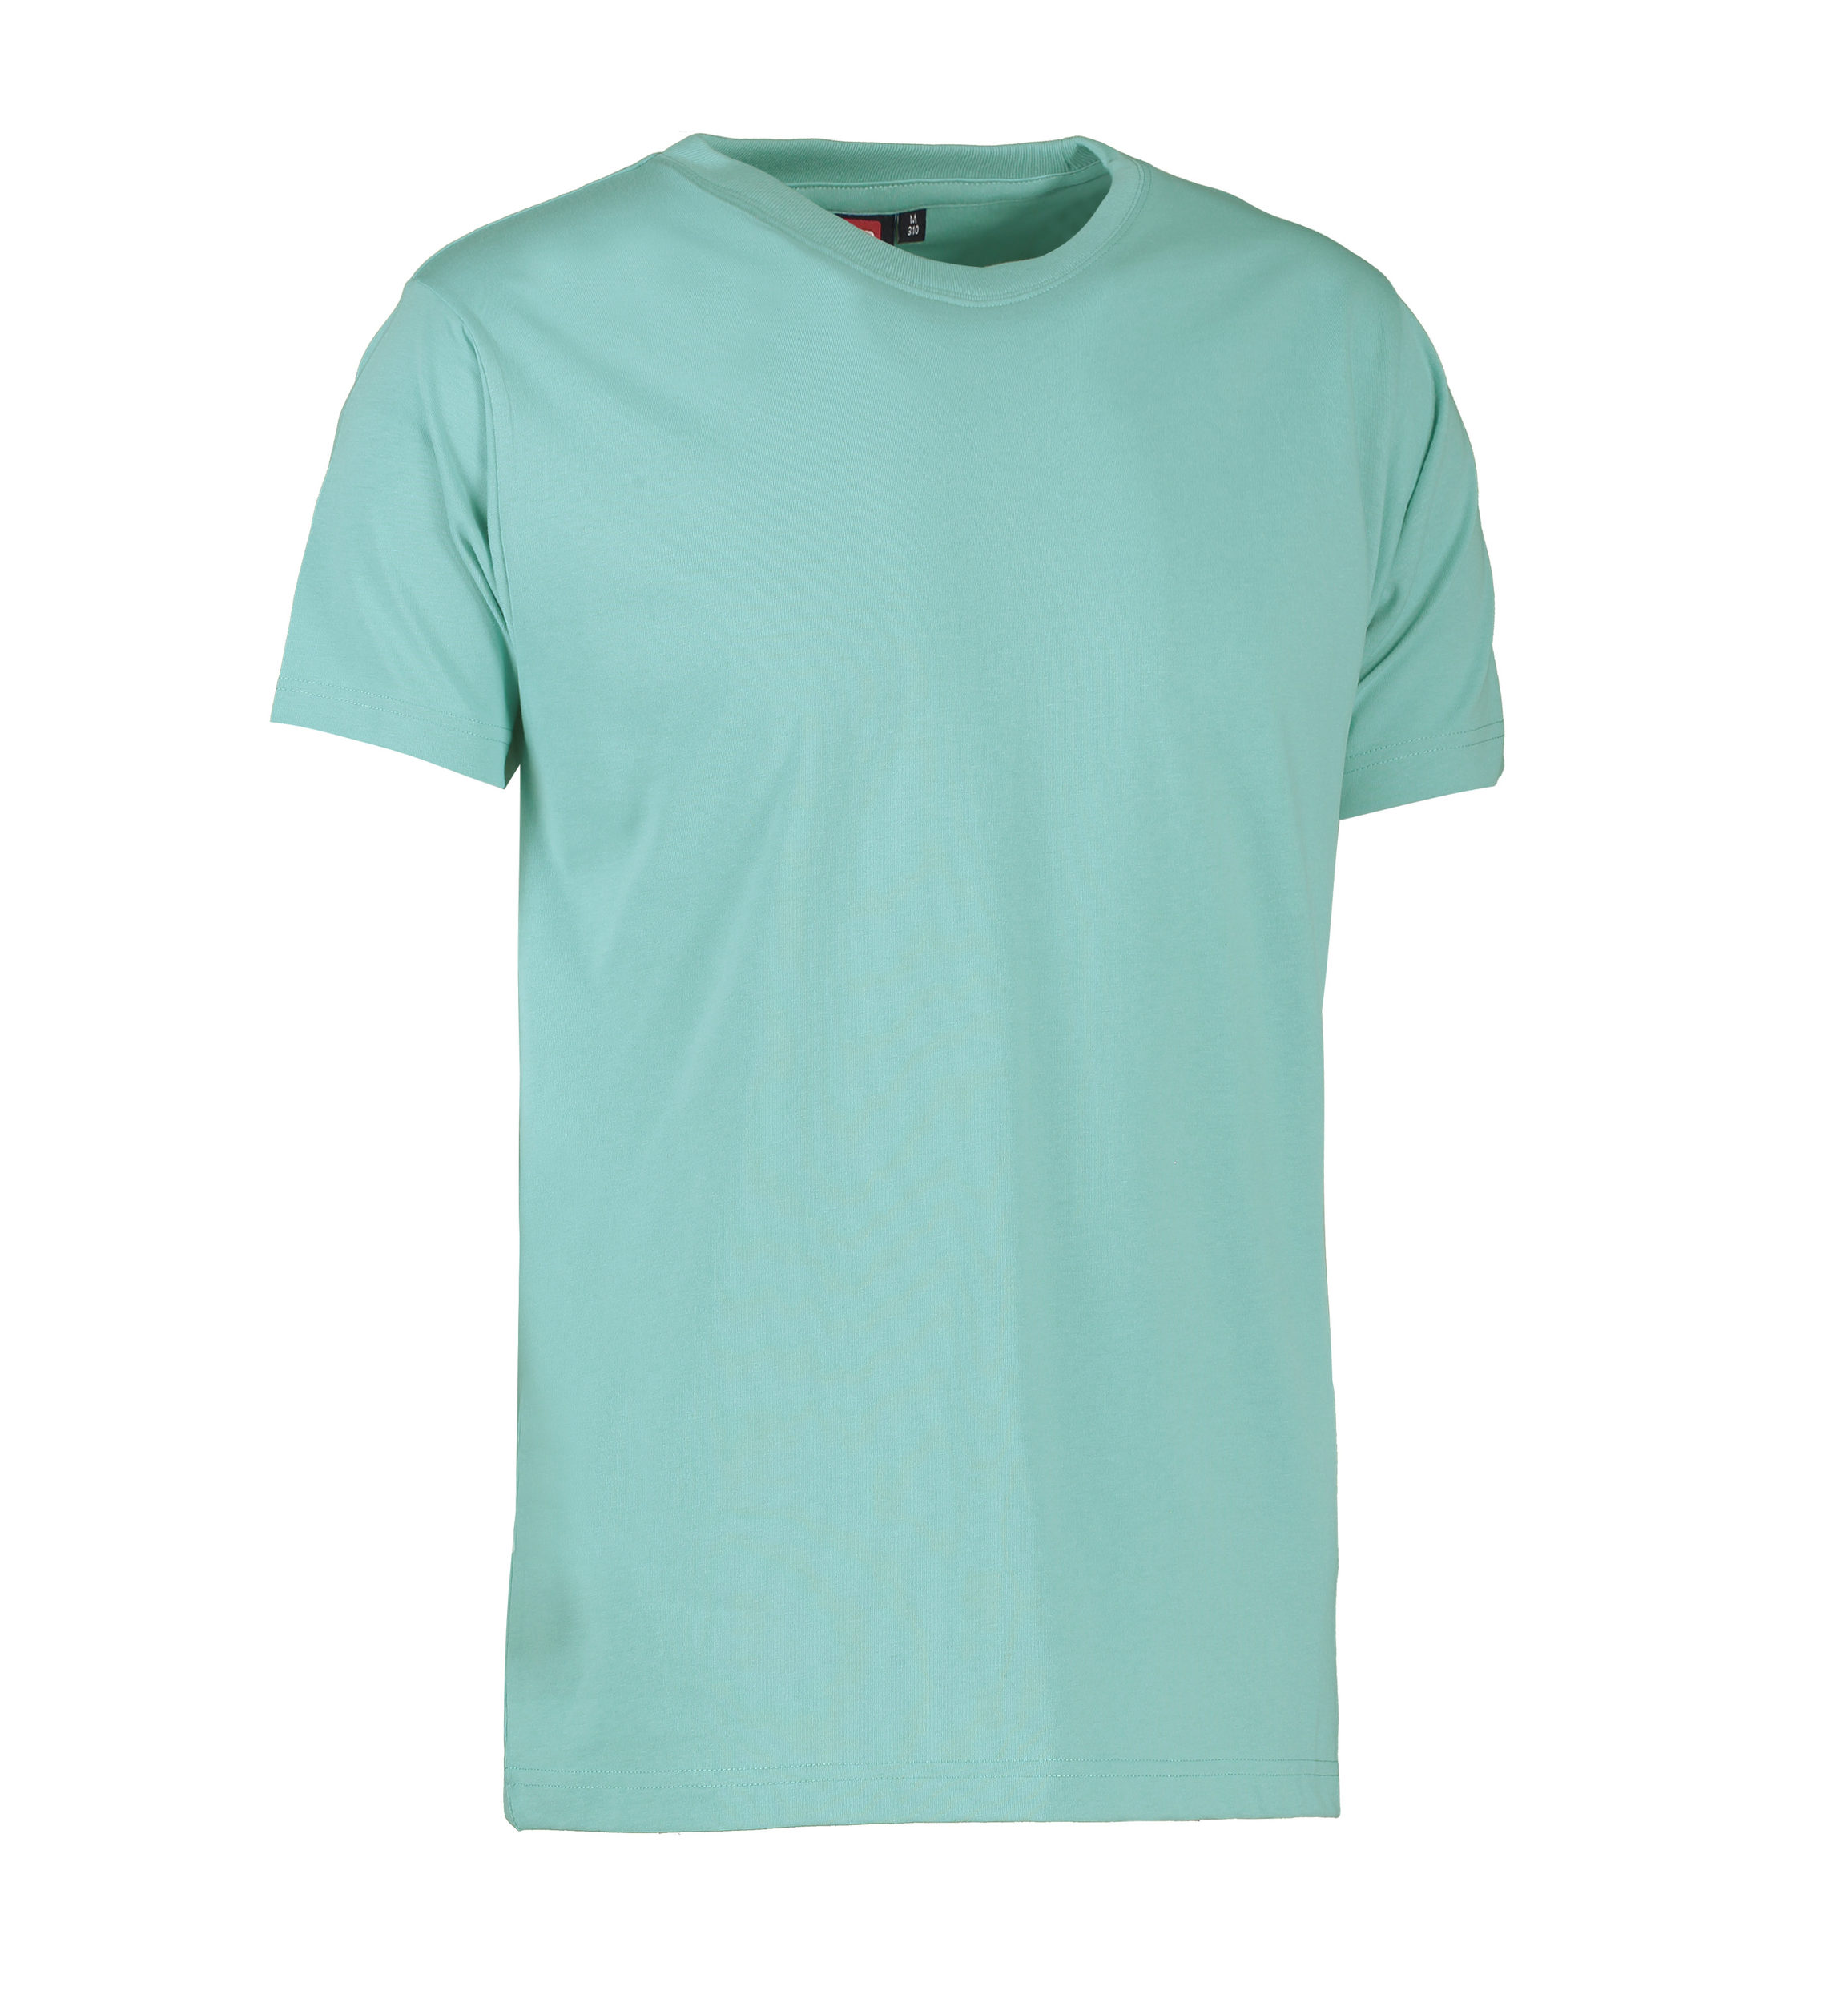 Billede af Slidstærk t-shirt i lys grøn til mænd - M hos Sygeplejebutikken.dk